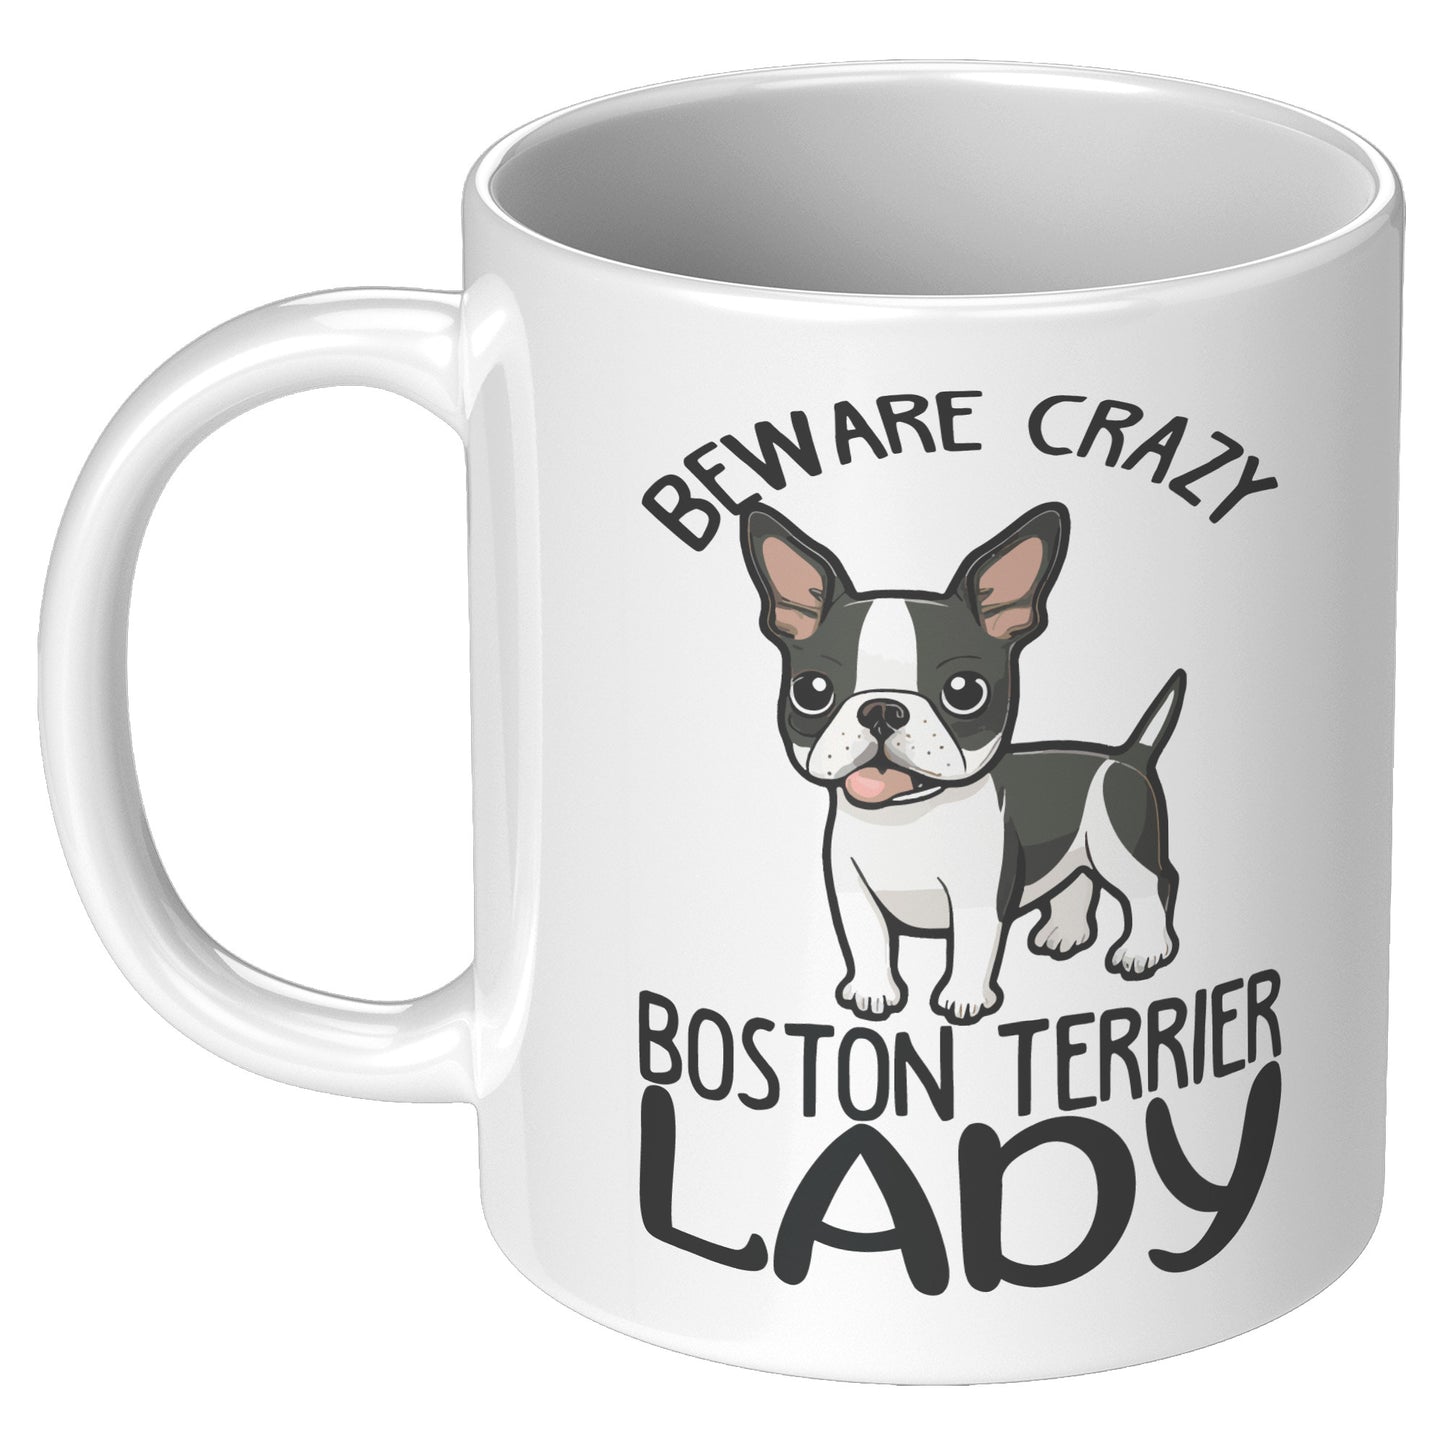 Bean-Mug for Boston Terrier lovers